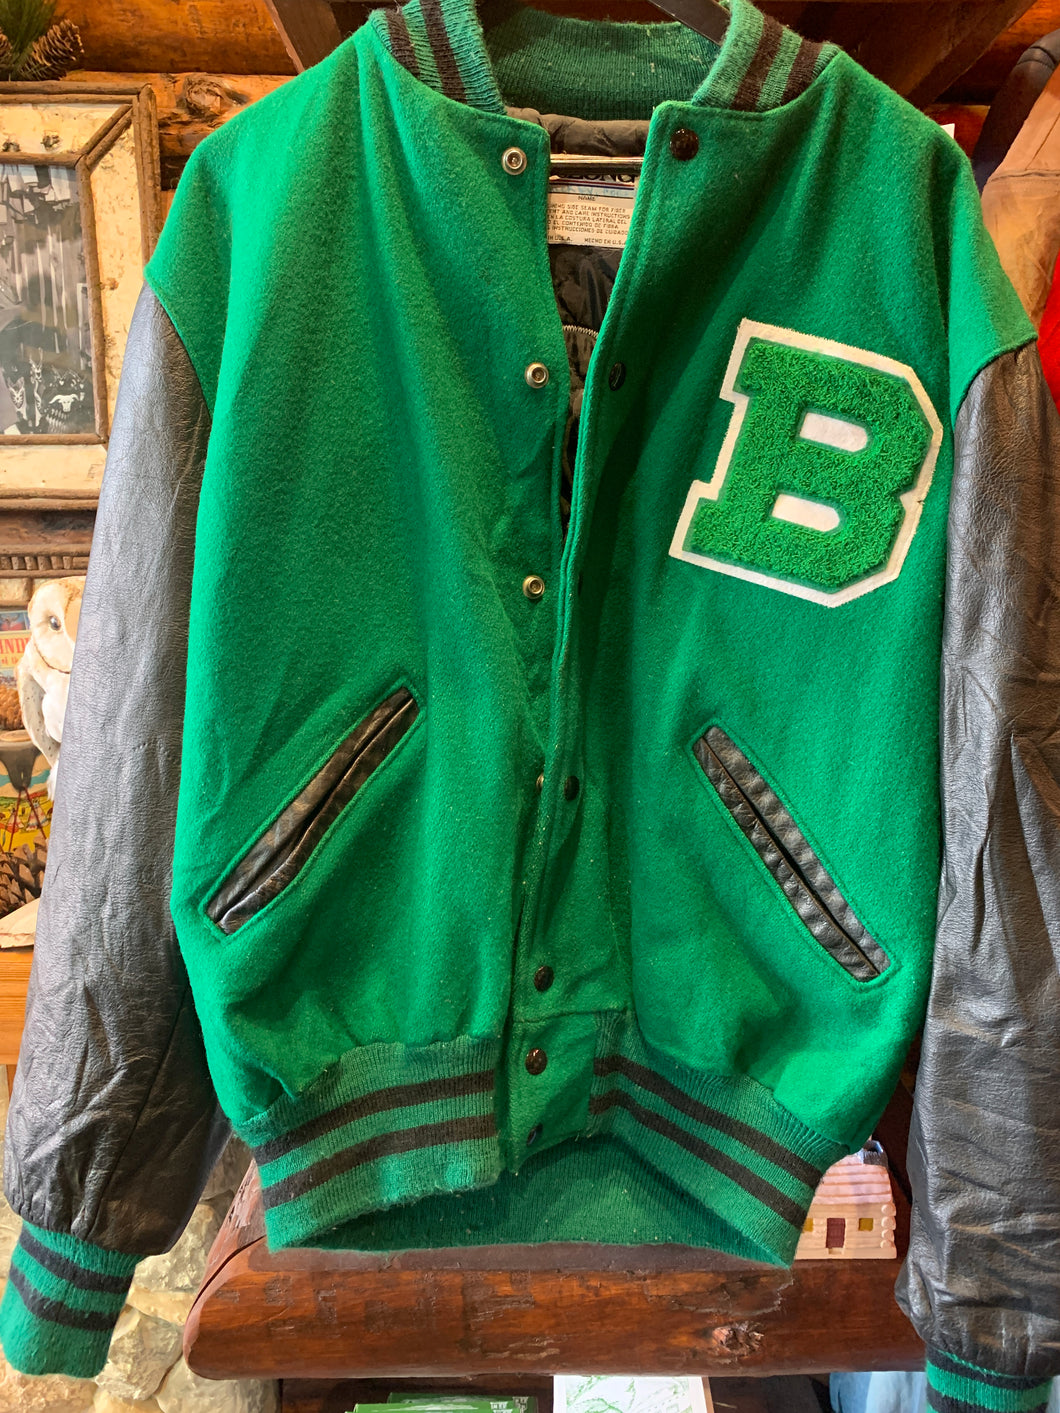 Vintage St. Bede Bruins, De Longe College Jacket. Large. FREE POSTAGE